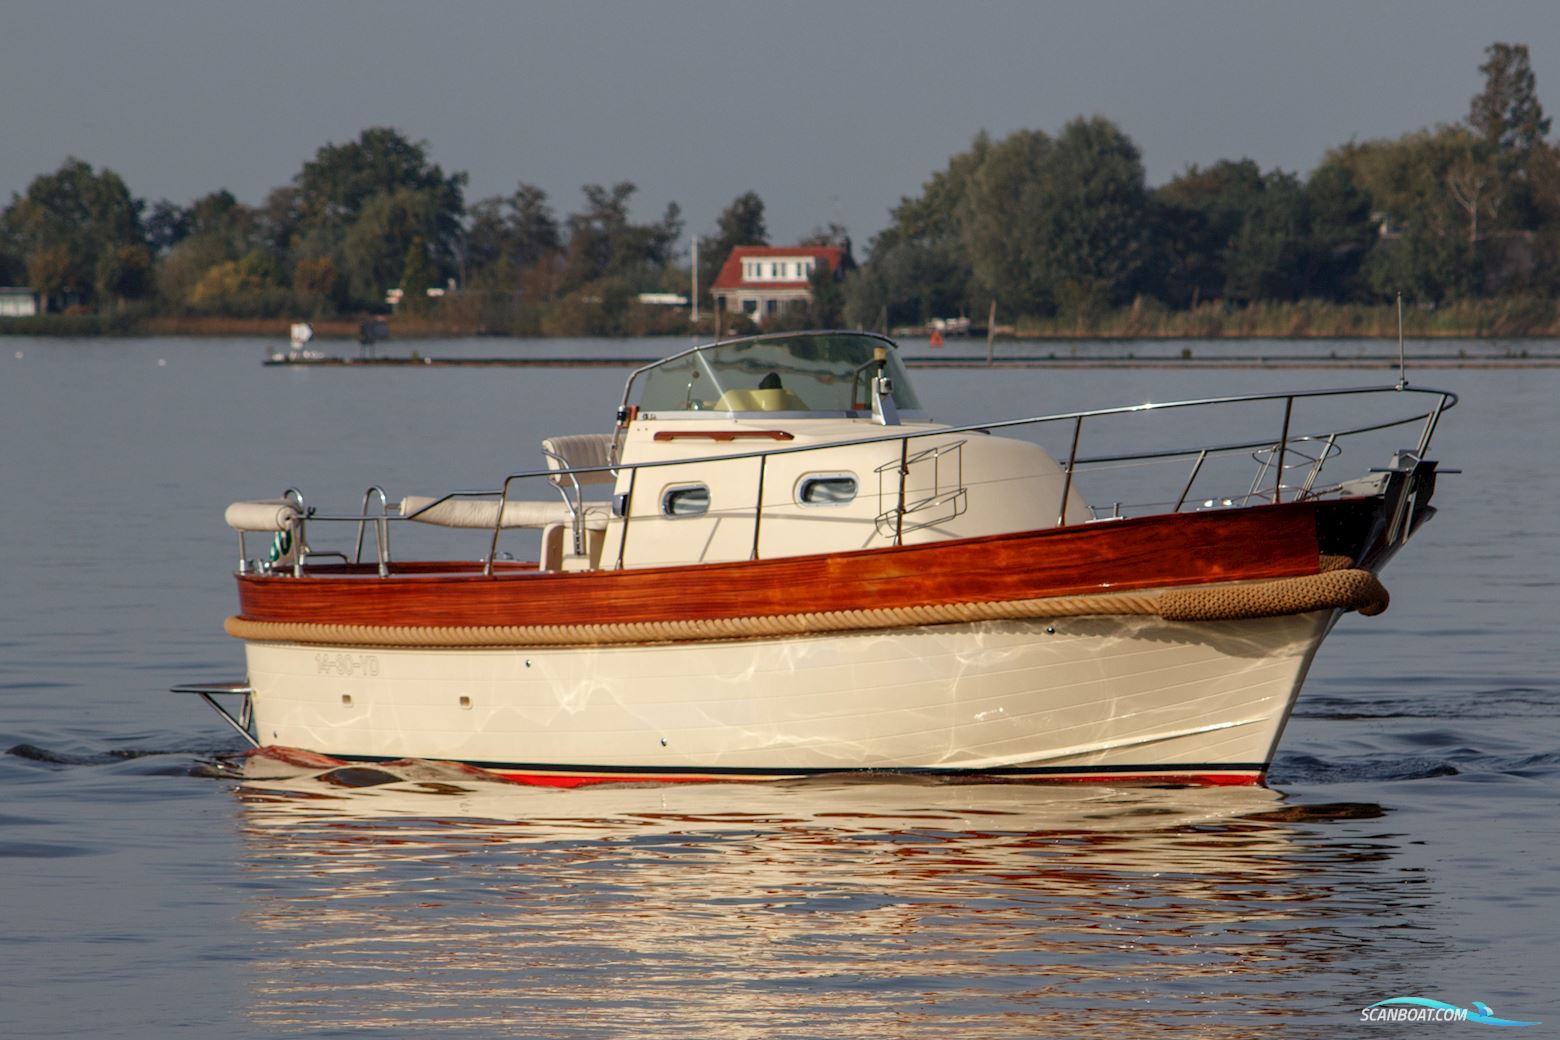 Antaris 900 Special Segelbåt 2000, med Yanmar motor, Holland